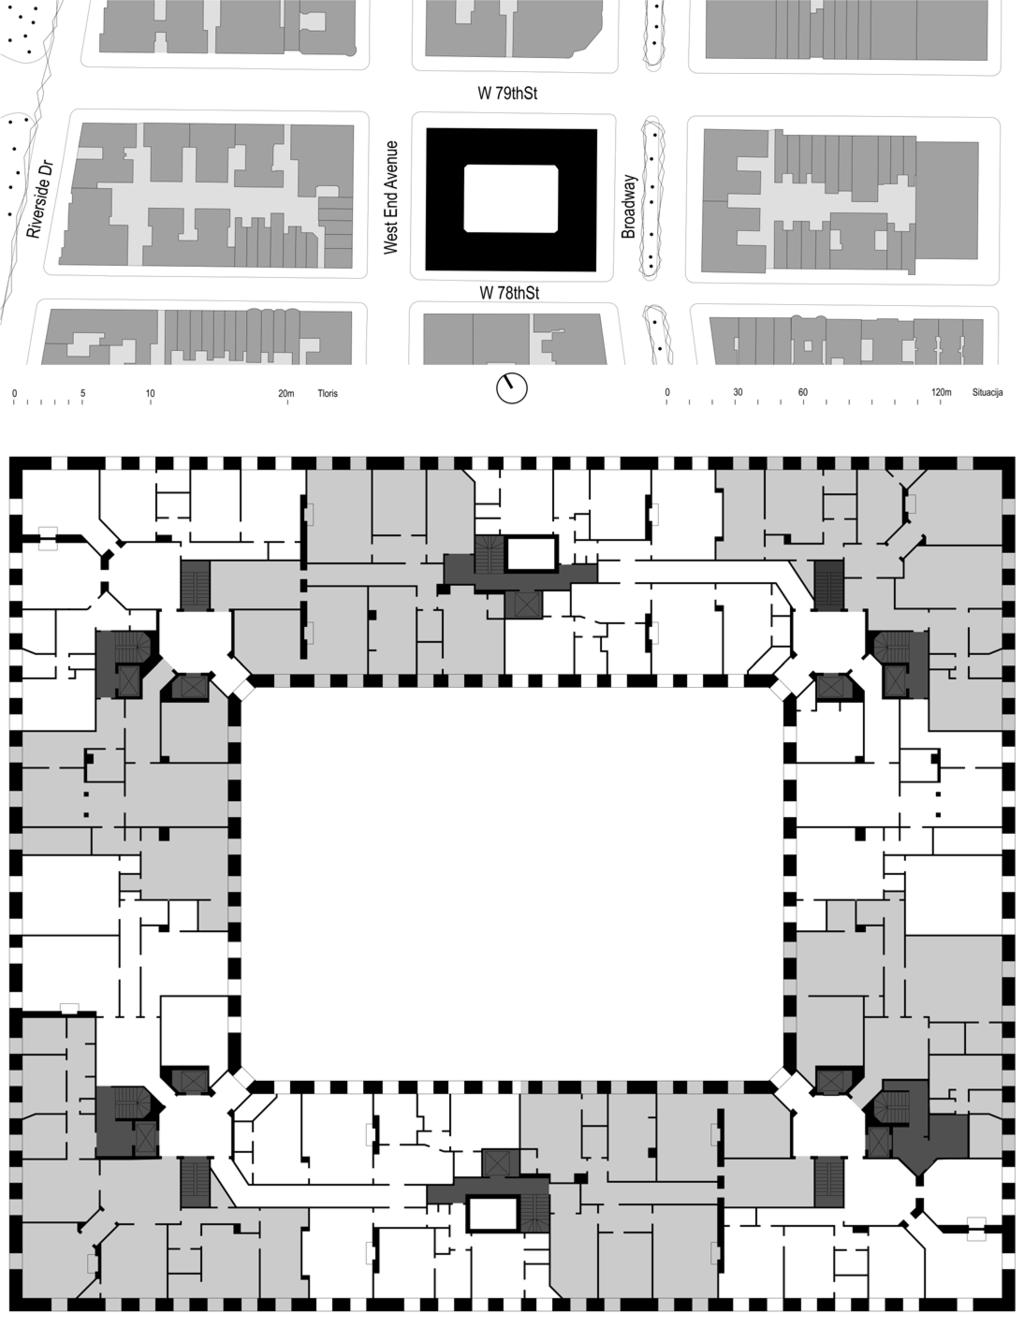 Za čim večjo izkoriščenost zazidalnega območja je Hardenbergh formiral stanovanjski objekt okoli osrednjega atrija (Slika 03, Slika 04), ki je poleg zasebnega vstopnega dvorišča zagotavljal